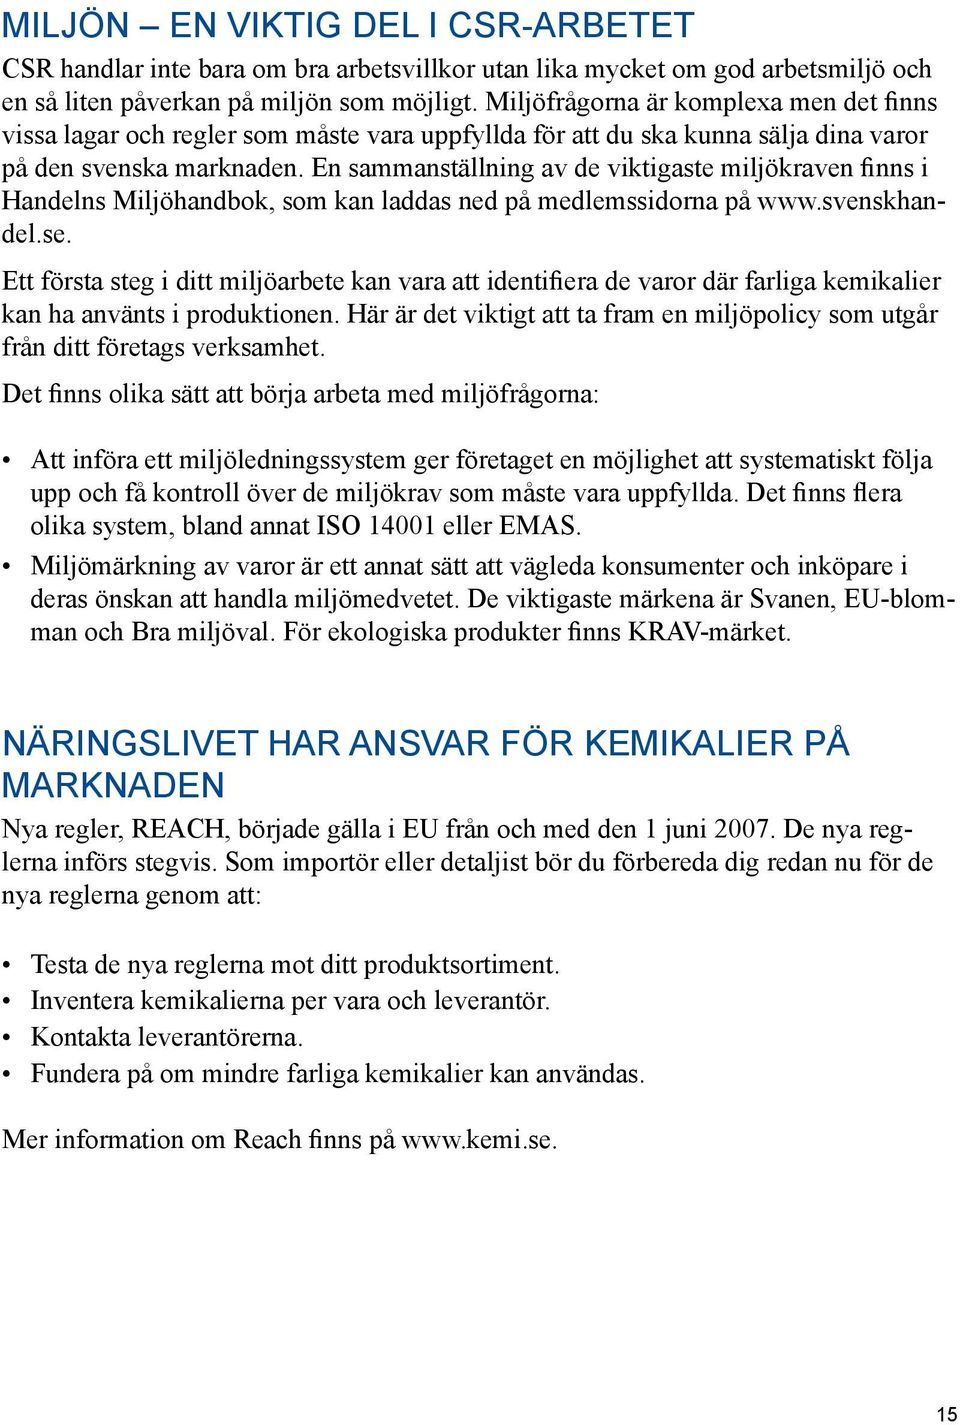 En sammanställning av de viktigaste miljökraven finns i Handelns Miljöhandbok, som kan laddas ned på medlemssidorna på www.svenskhandel.se.